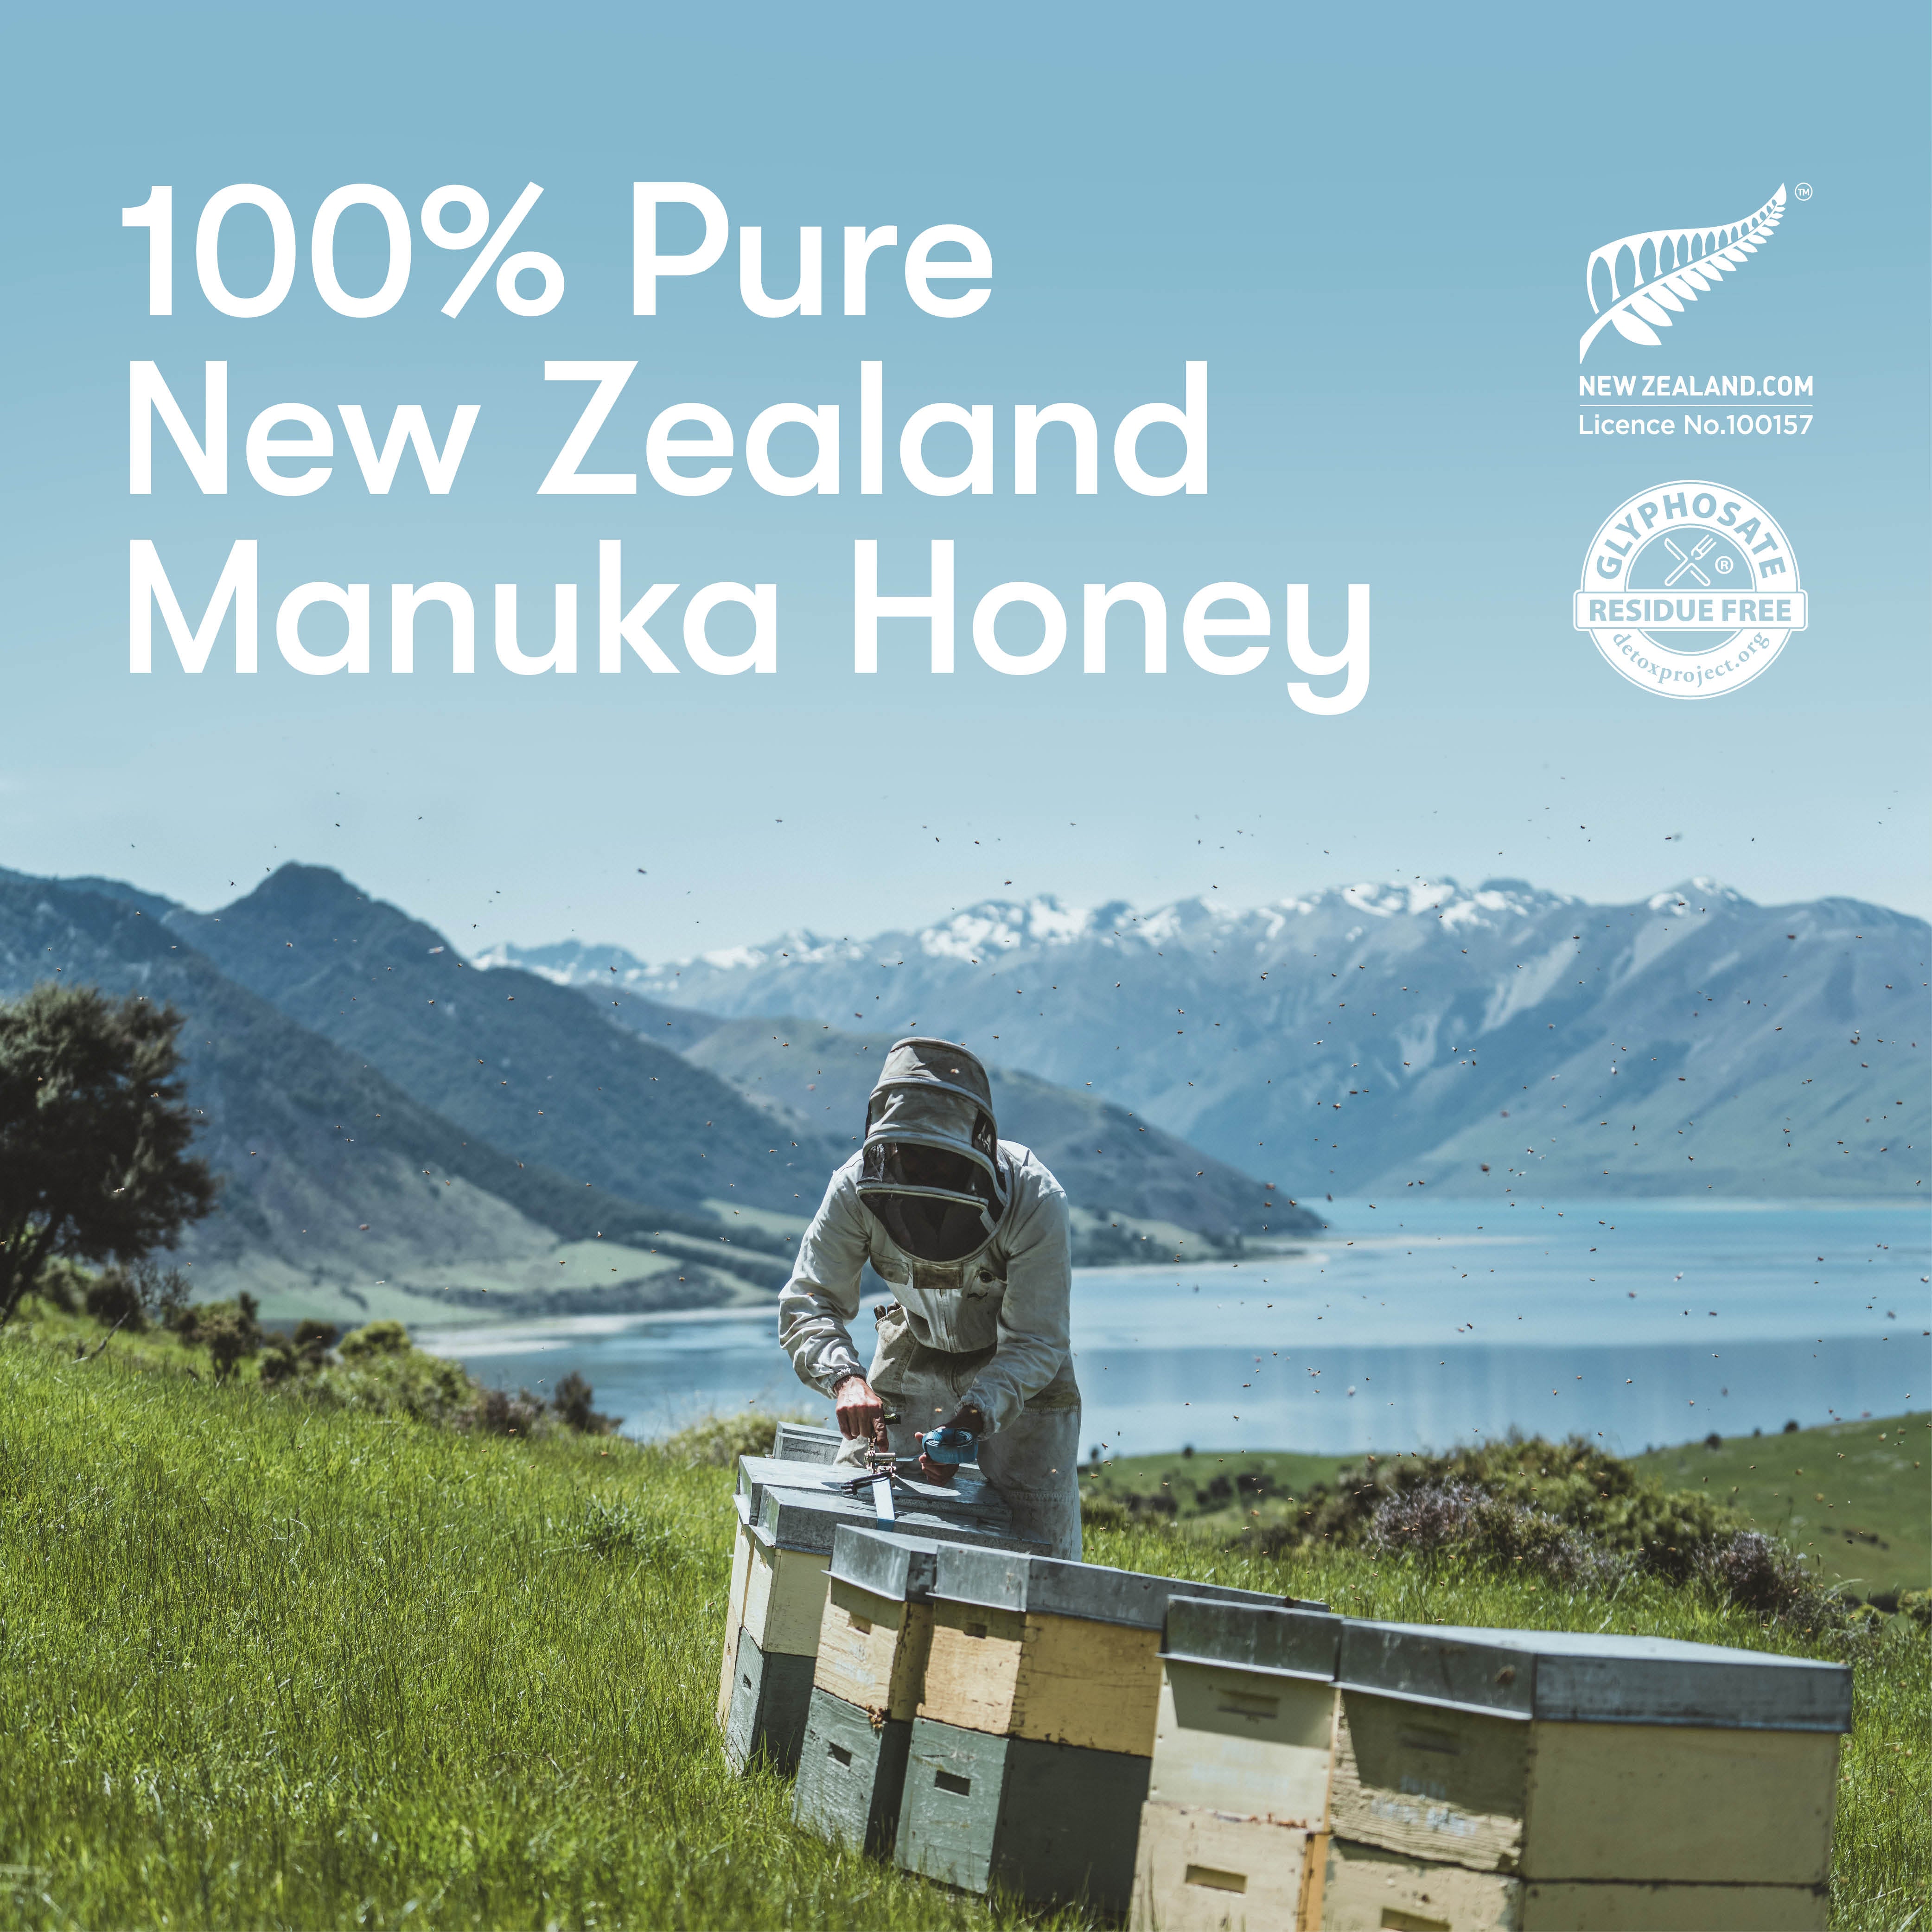 Miel de Manuka New Zealand - Certificado UMF 20+ (MGO 829+) 100% miel de  Manuka pura de Nueva Zelanda, miel de Manuka galardonada de Nueva Zelanda